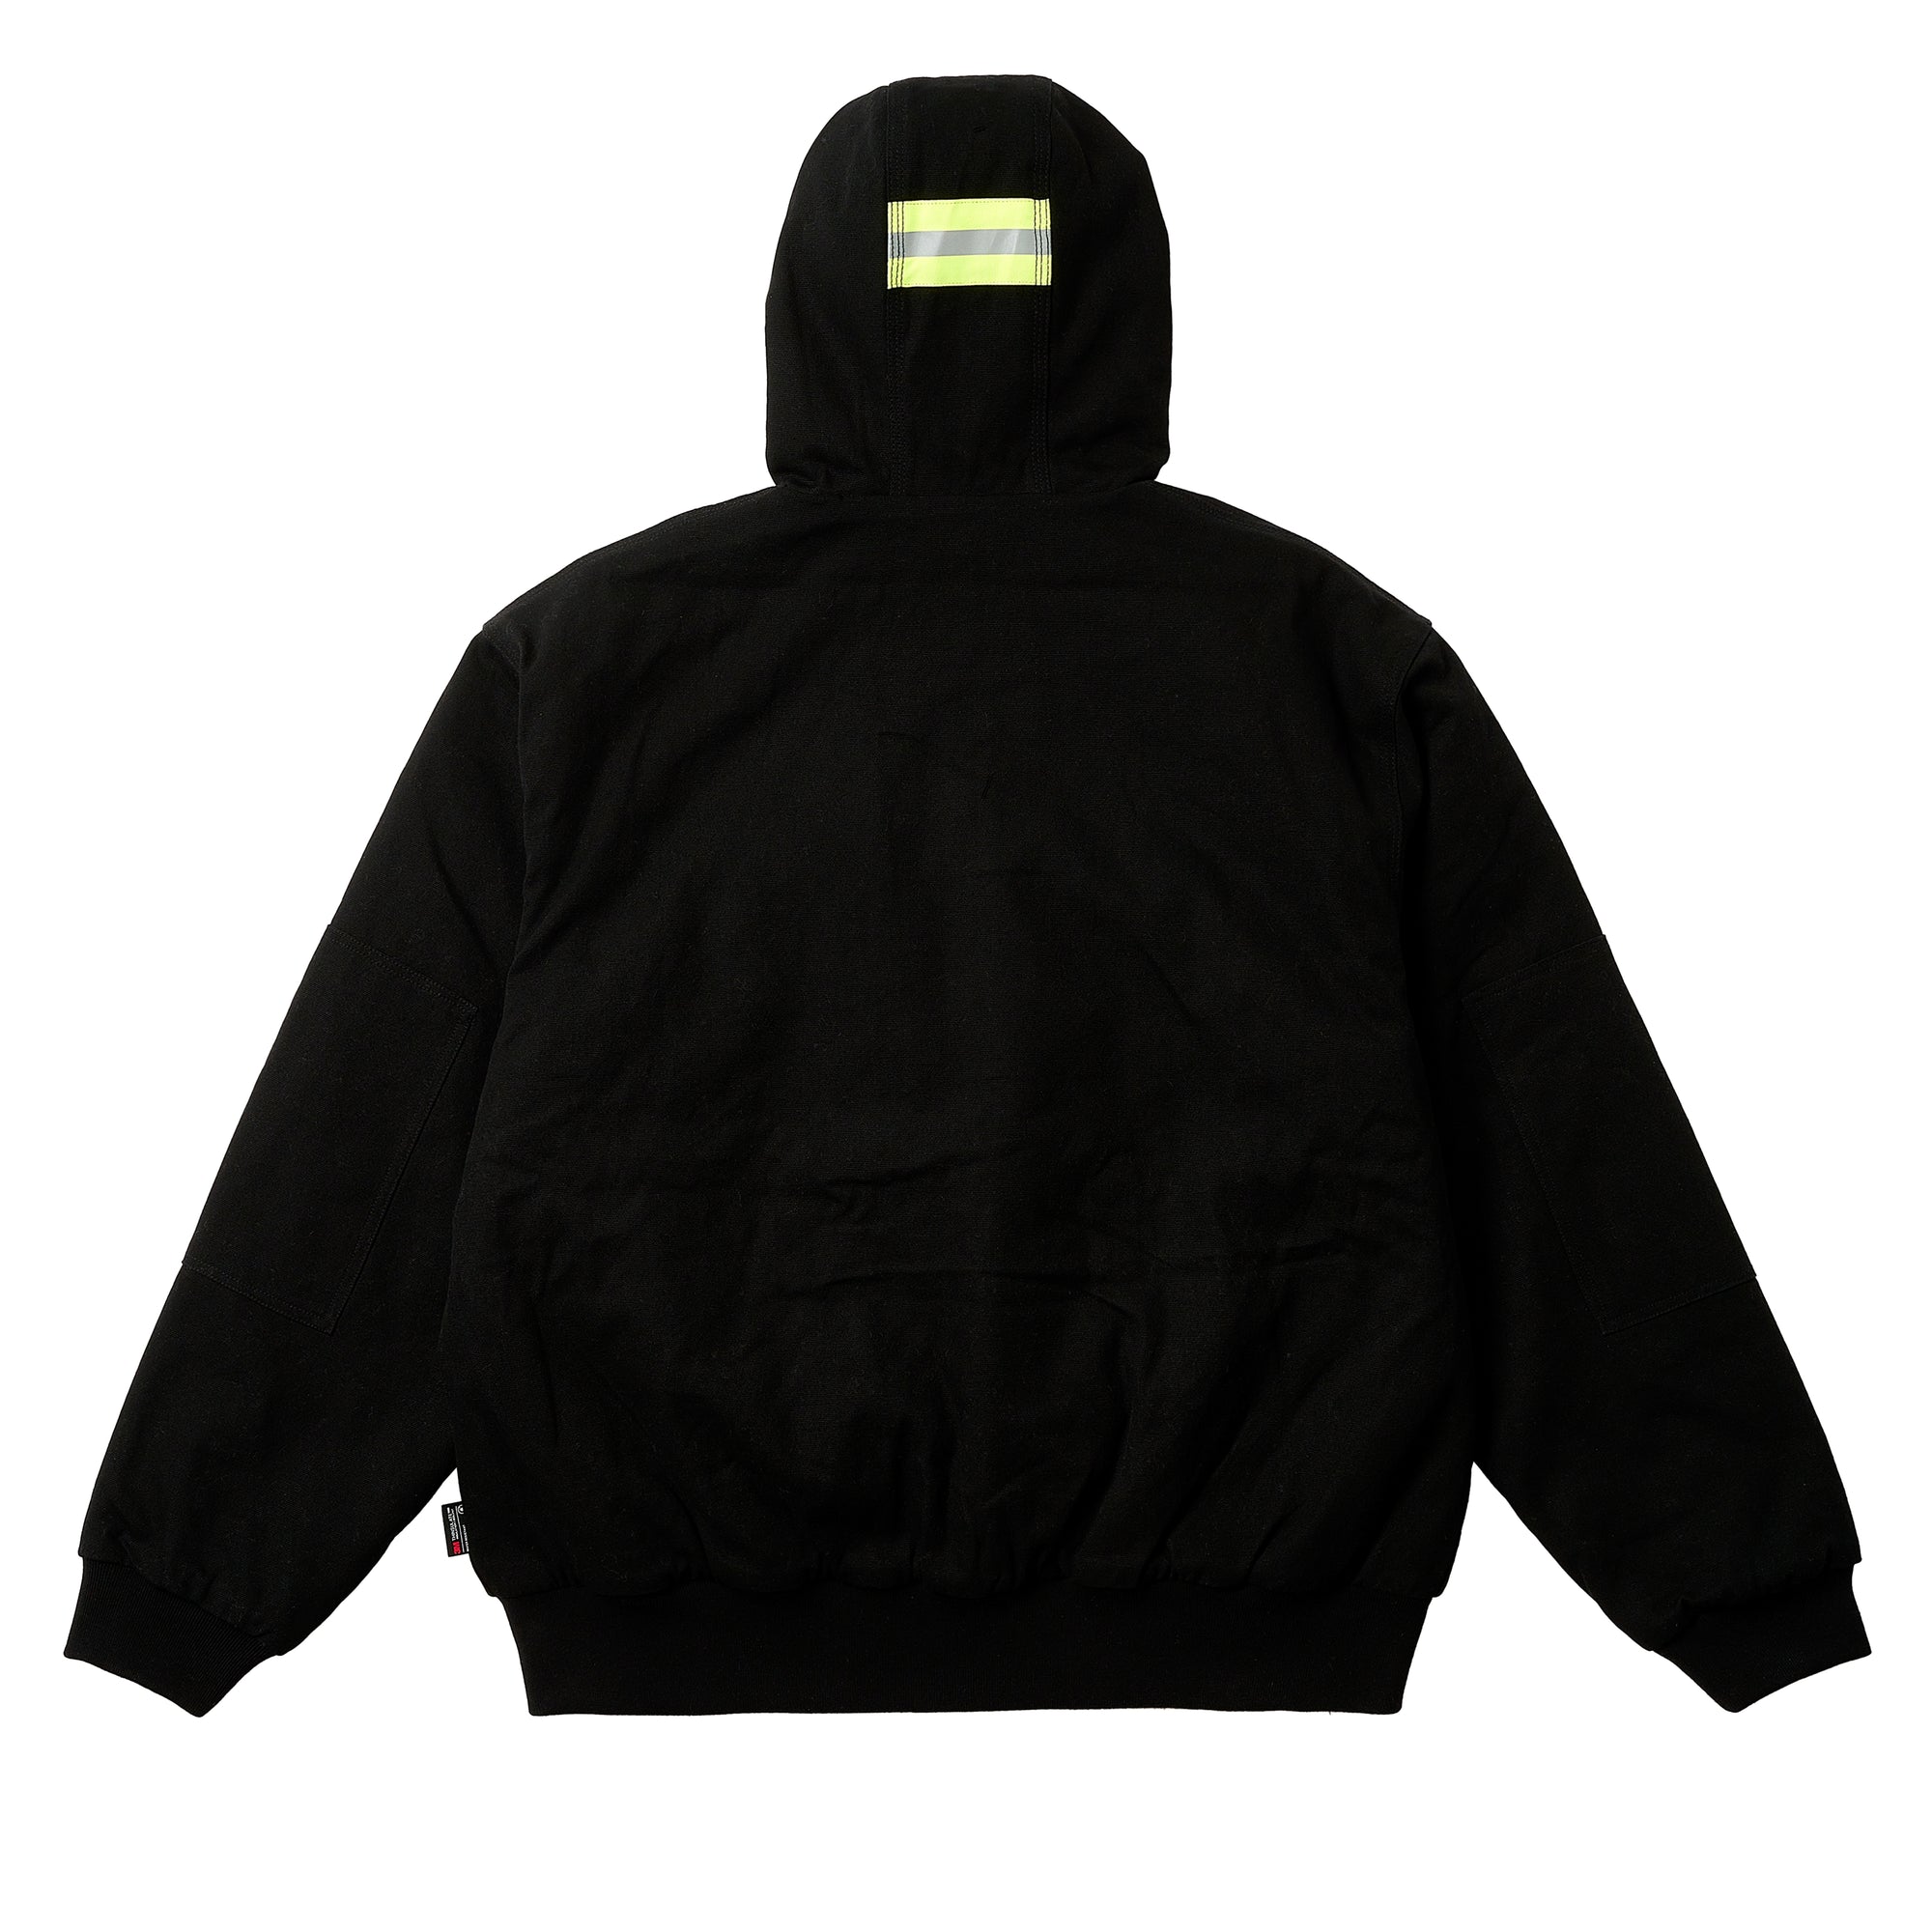 Palace - Palace Hardware Hooded Workwear Jacket - (Black) view 3